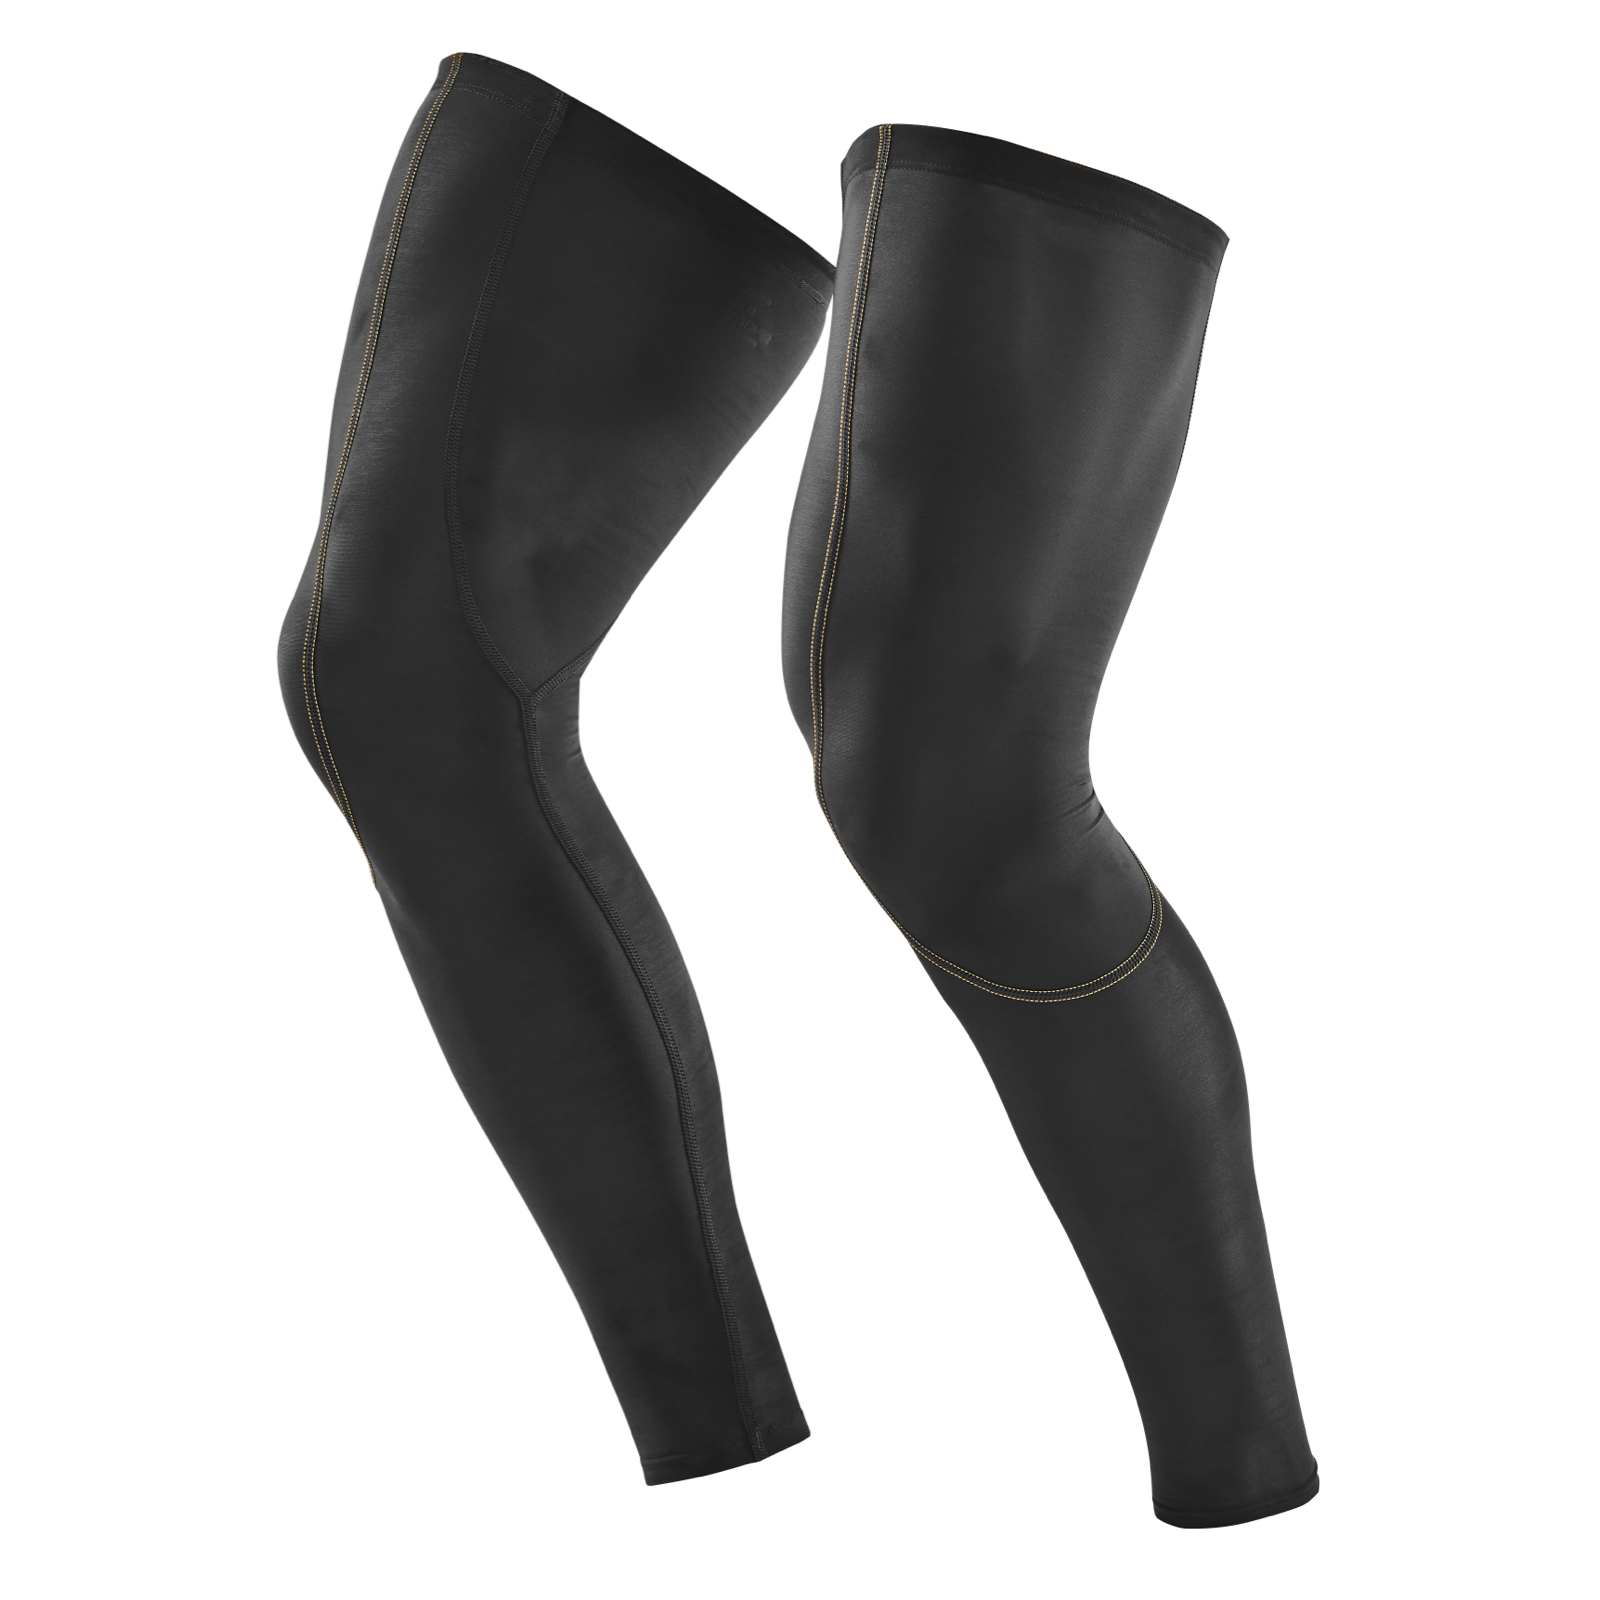 Leg Compression Sleeves - Shop Online